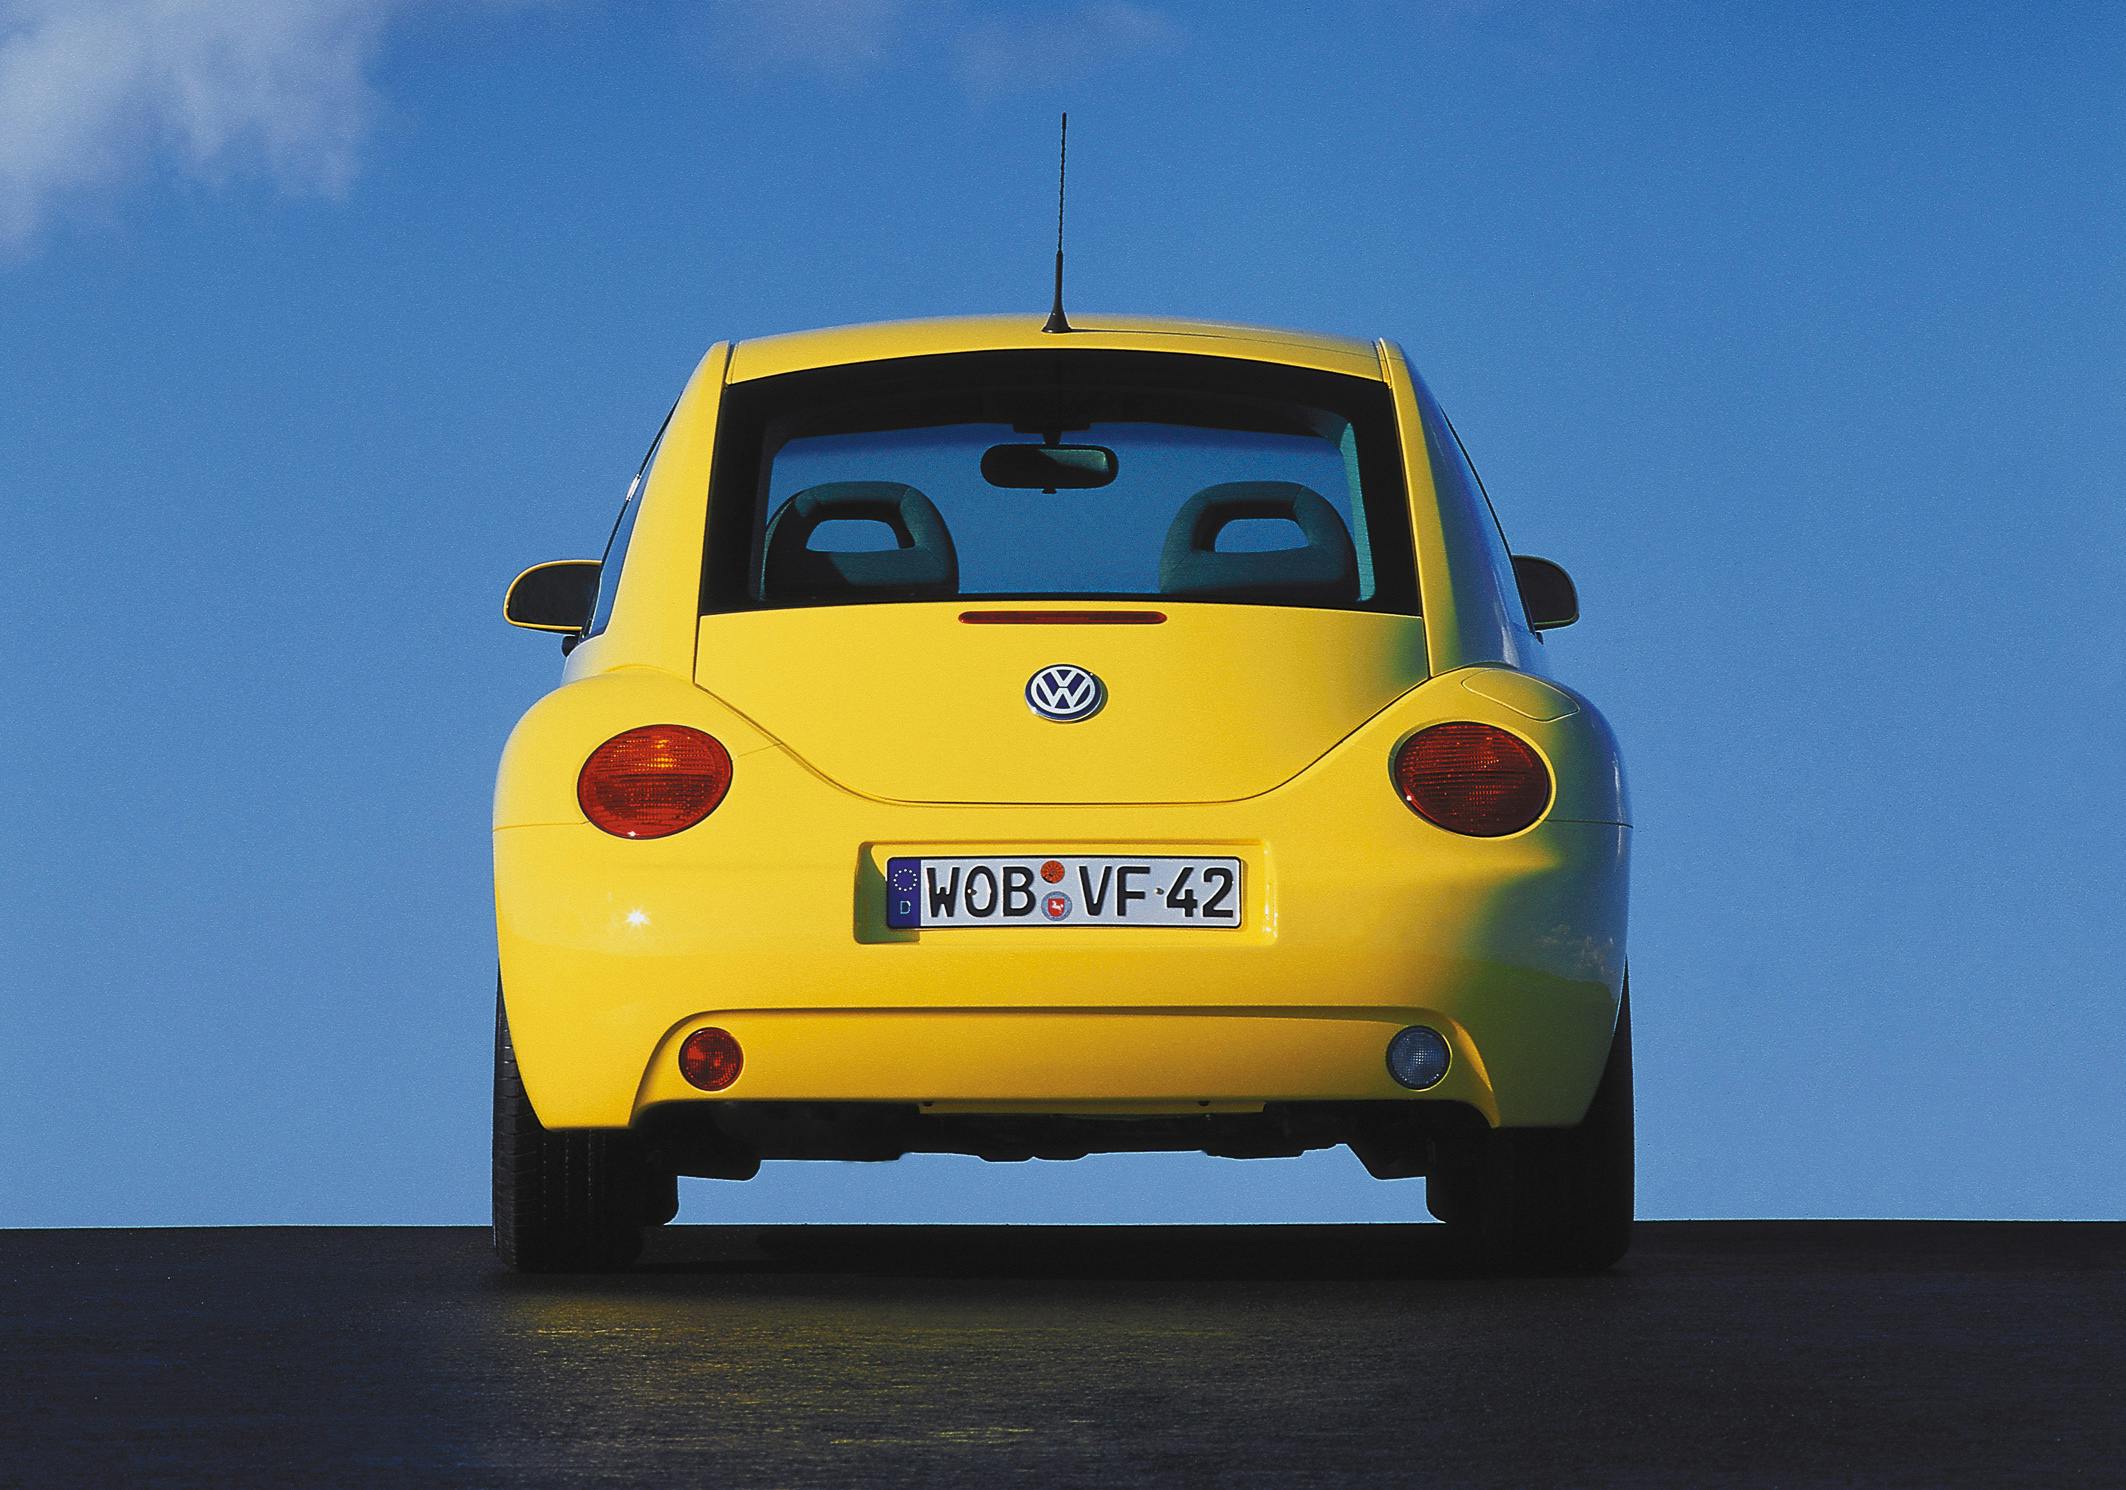 VW Beetle 1998 rear